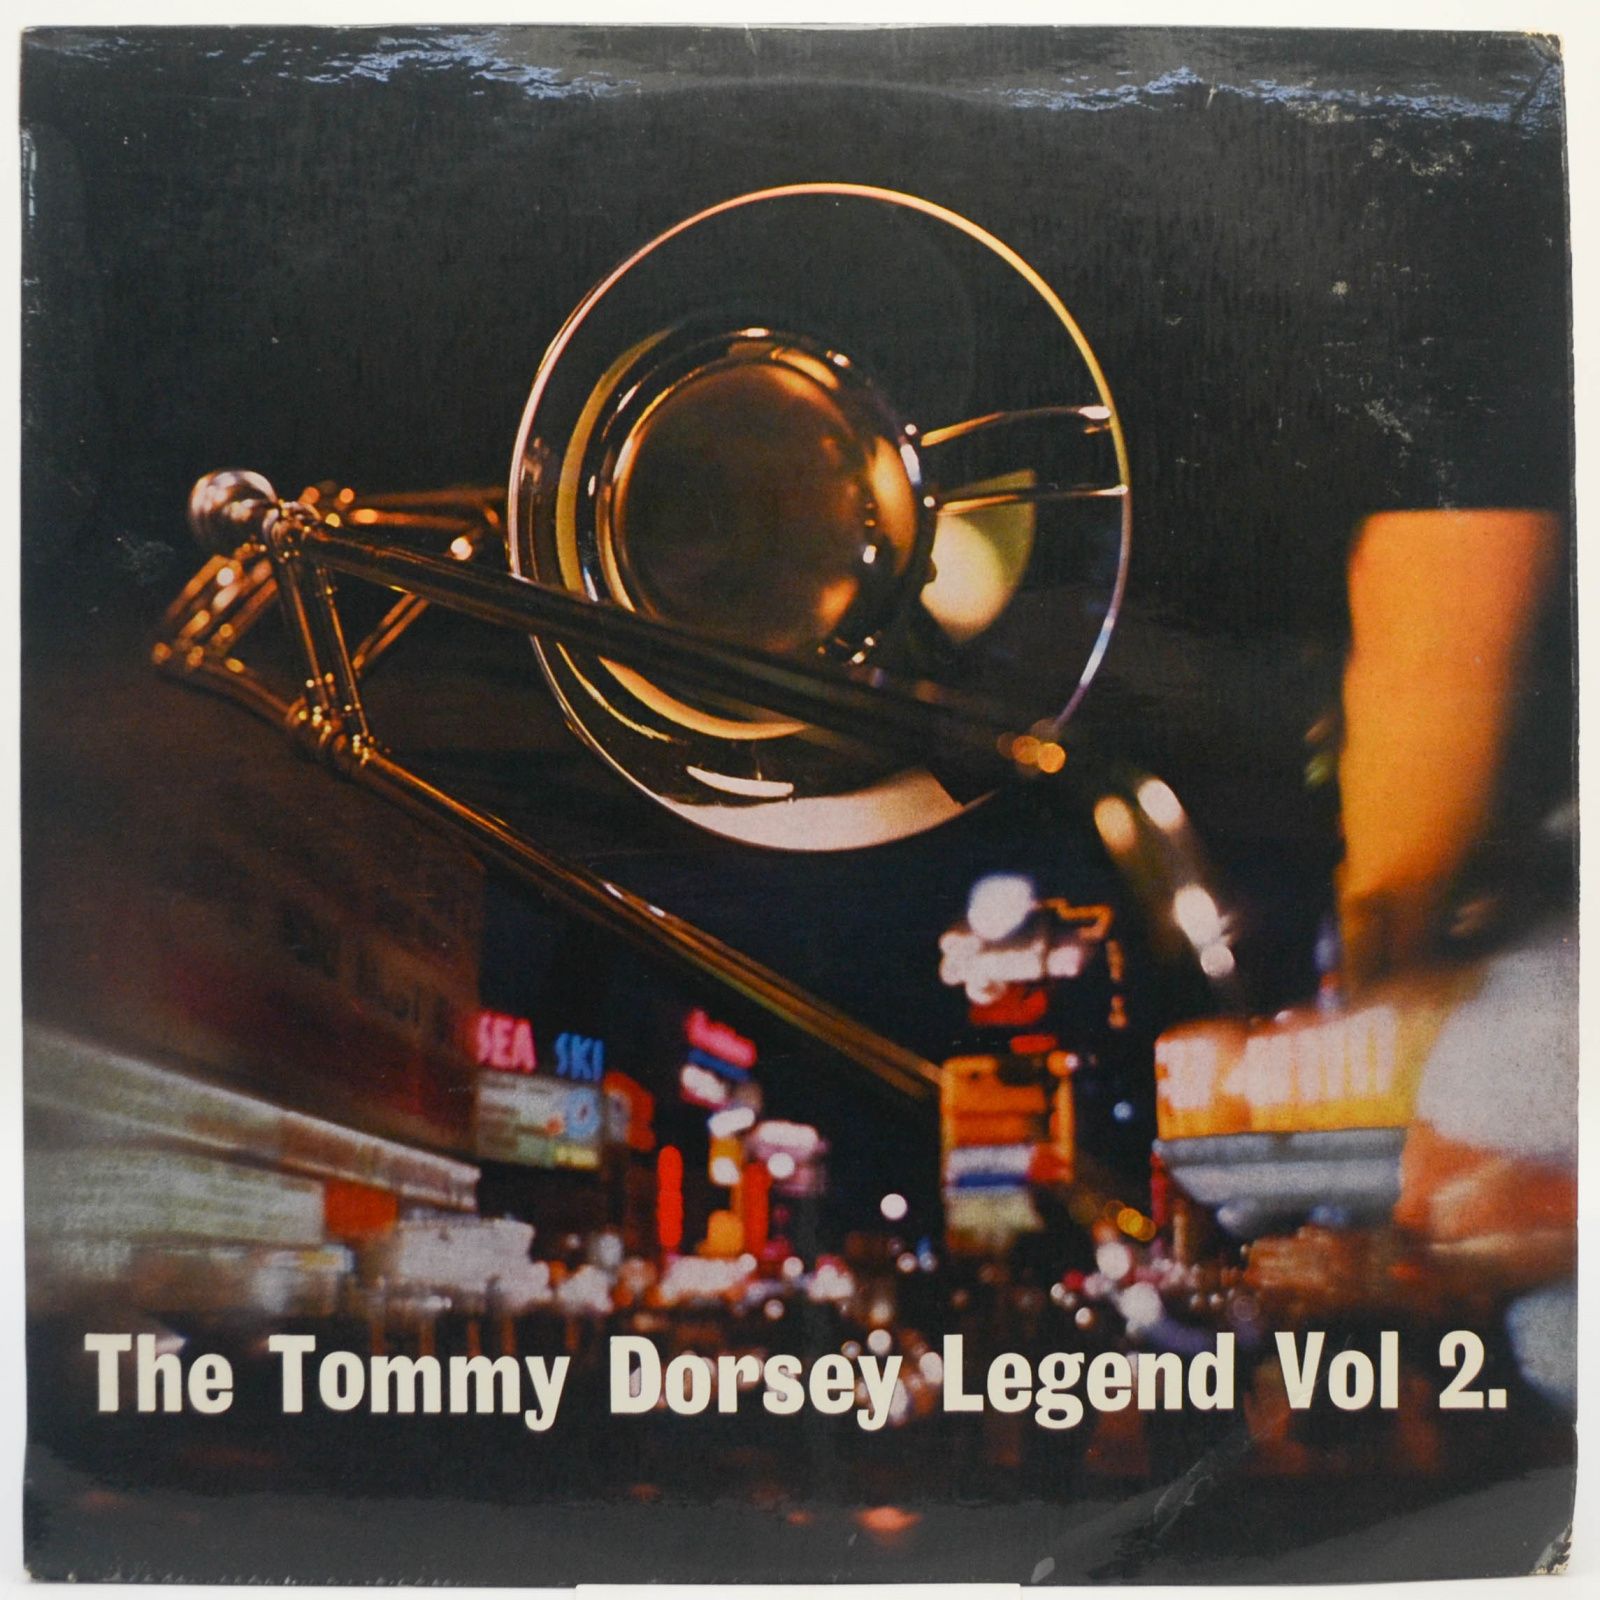 The Dorsey Legend Vol. 2 (UK), 1964